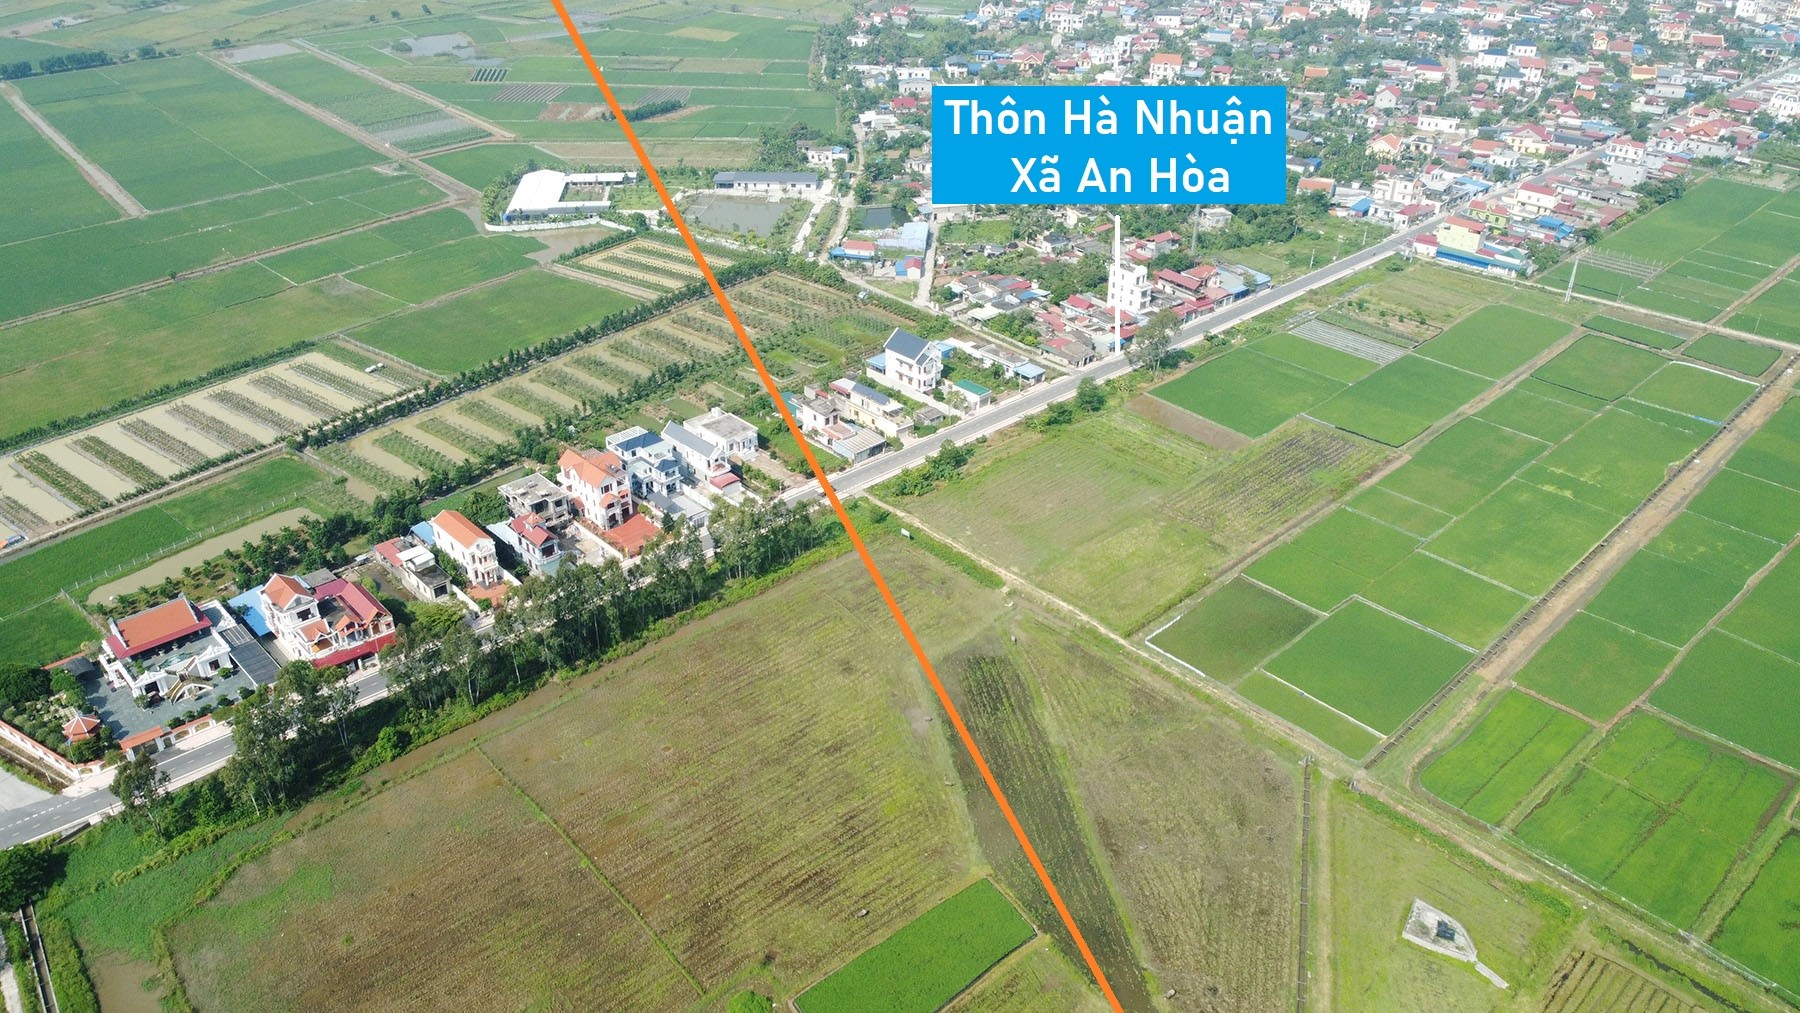 Toàn cảnh vị trí dự kiến quy hoạch cầu vượt sông Dầu nối xã Lê Thiện - An Hòa, An Dương, Hải Phòng